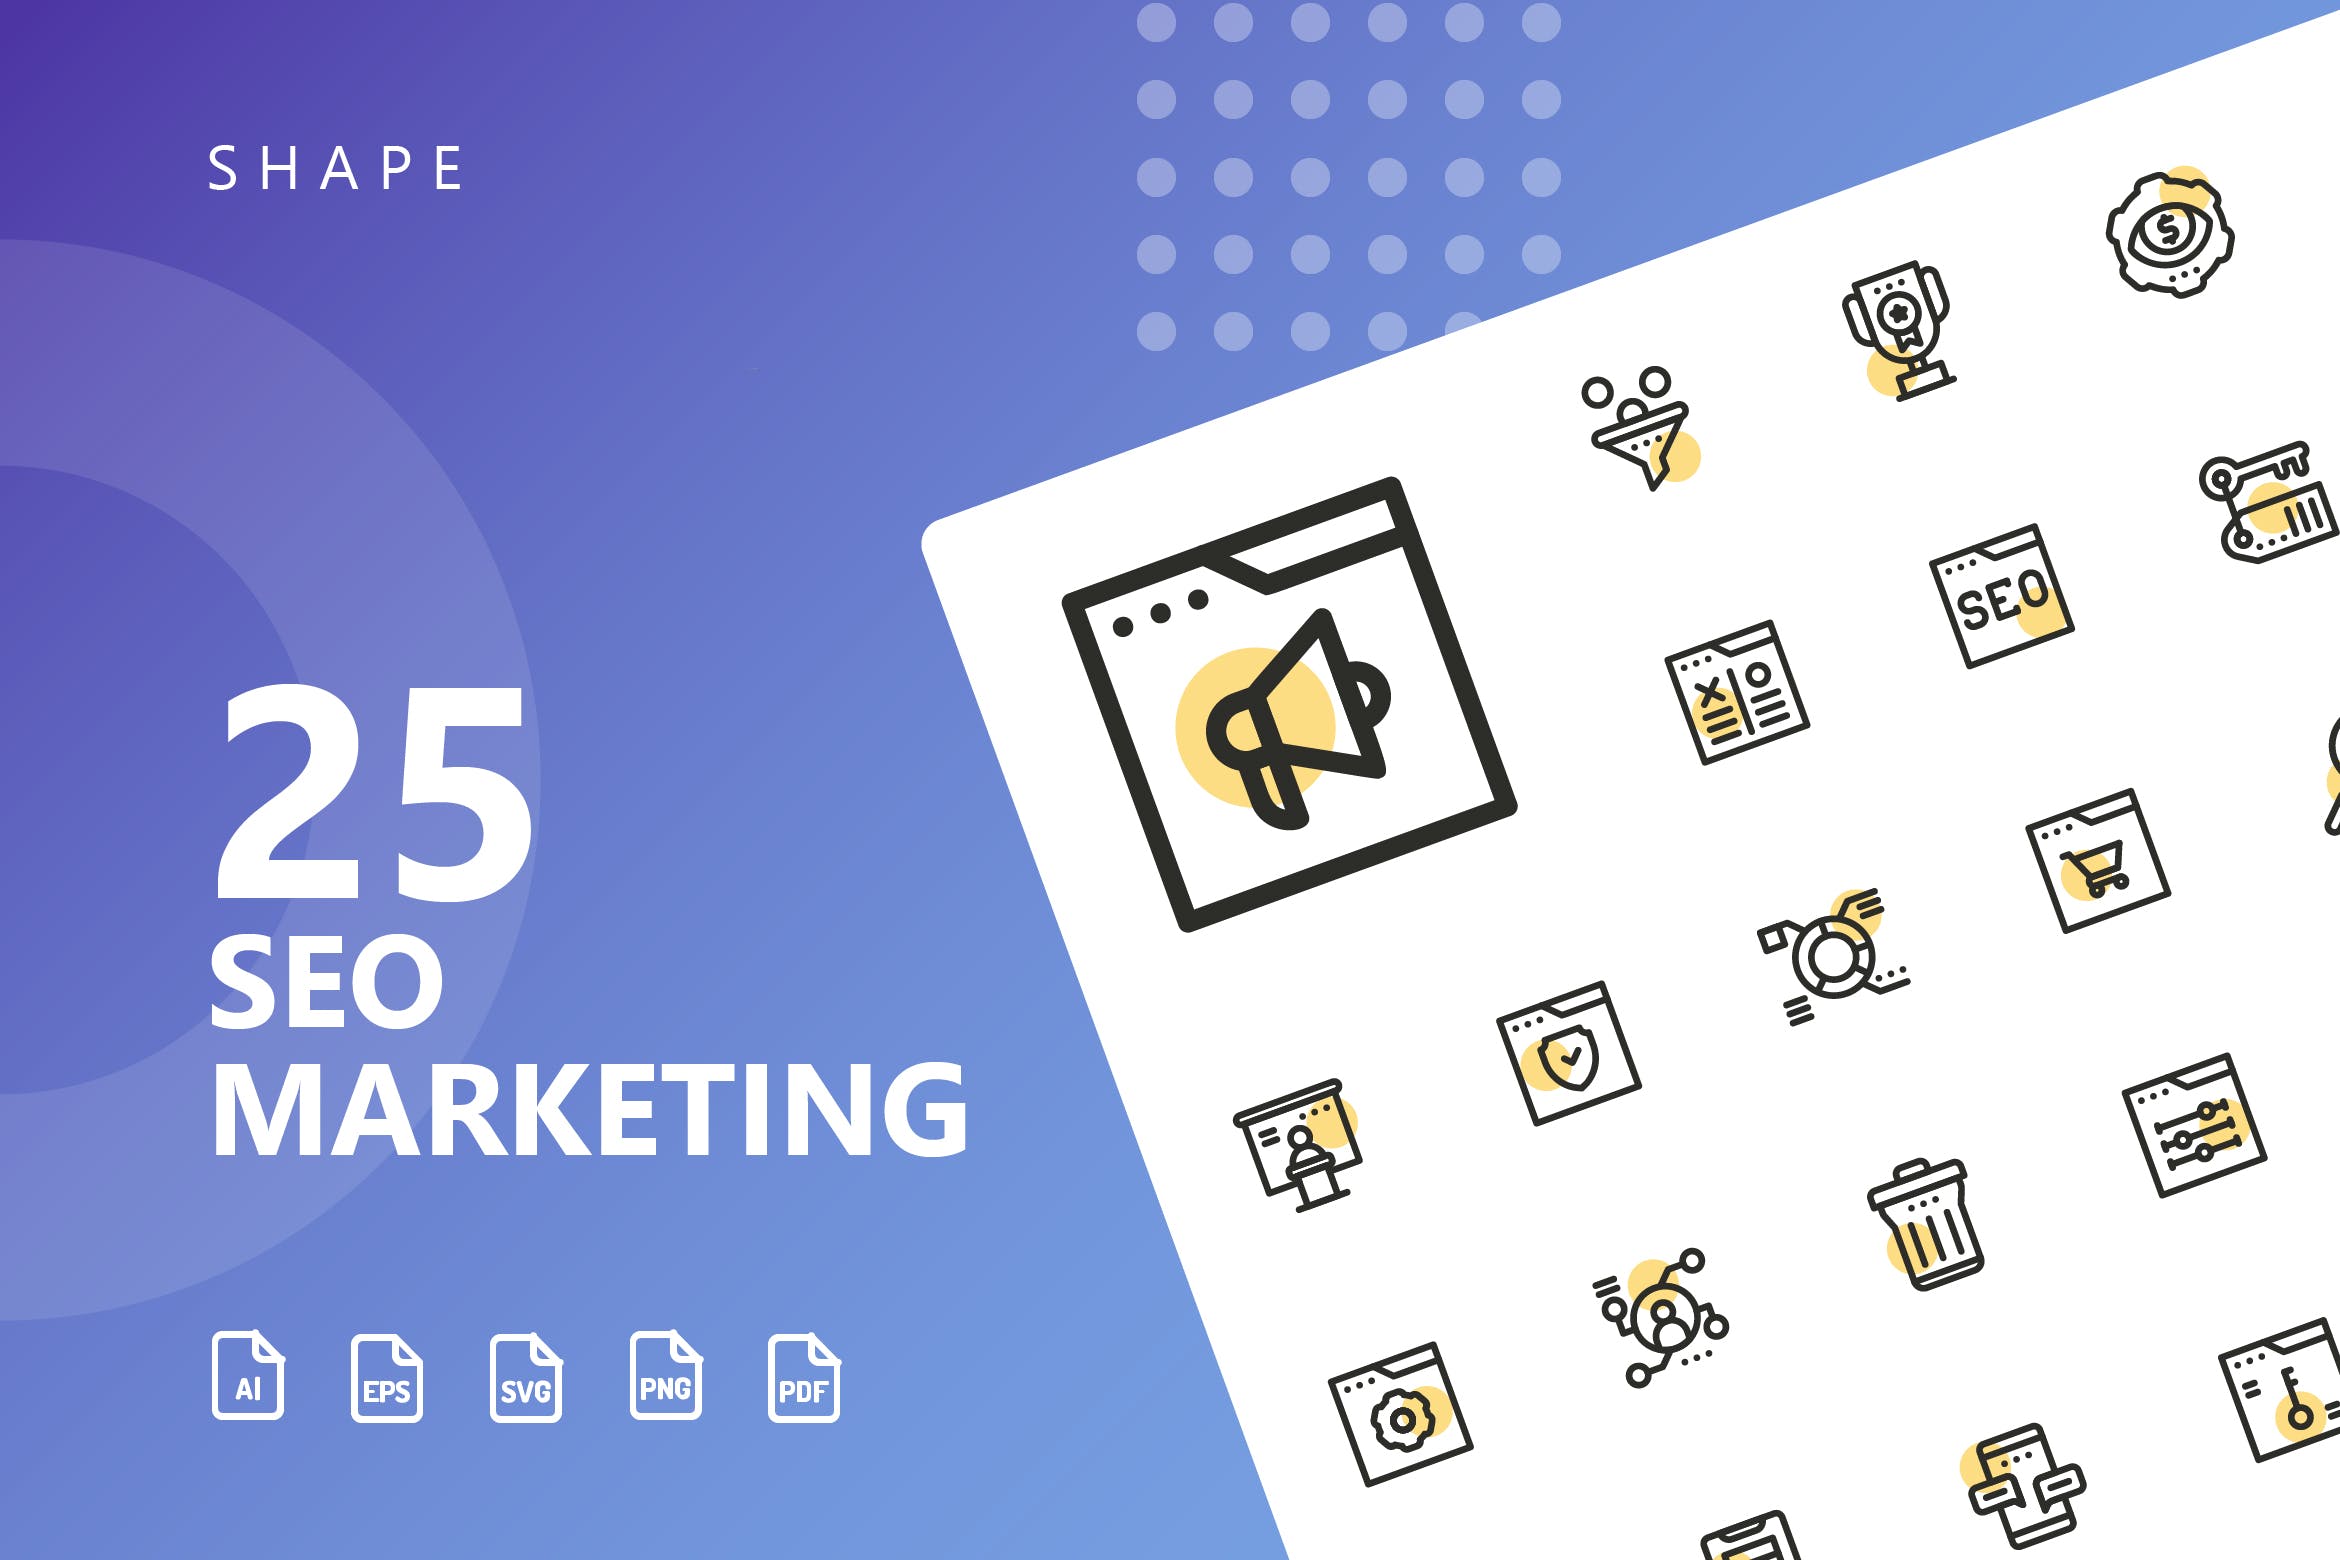 25枚SEO搜索引擎优化营销矢量圆点装饰第一素材精选图标v2 SEO Marketing Shape Icons插图